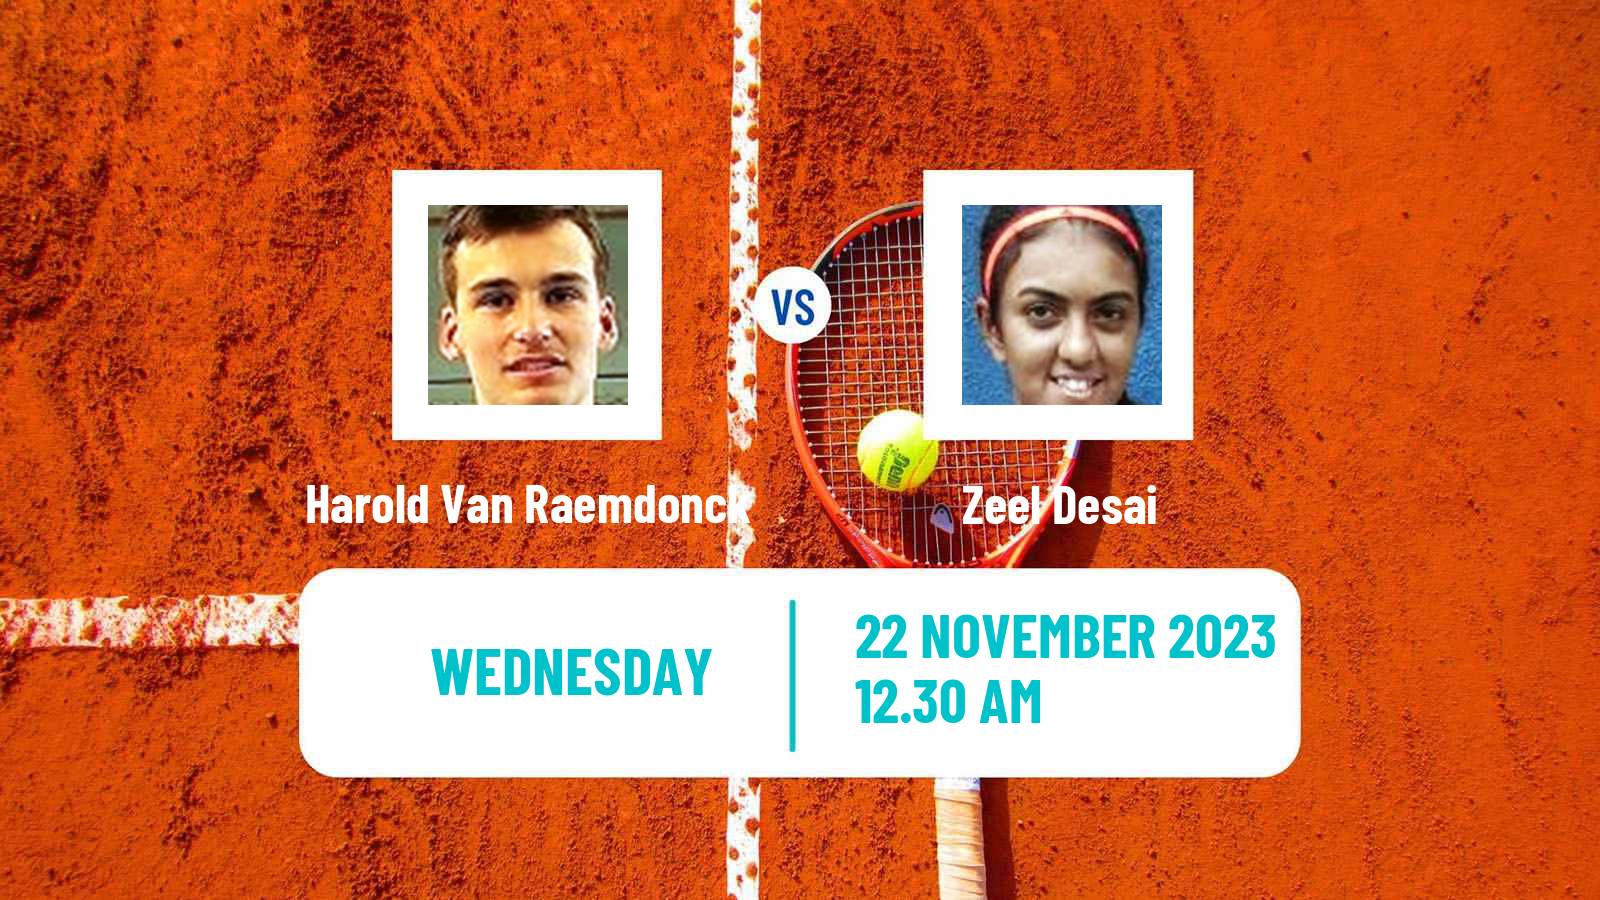 Tennis ITF W25 Bengaluru 2 Women Harold Van Raemdonck - Zeel Desai